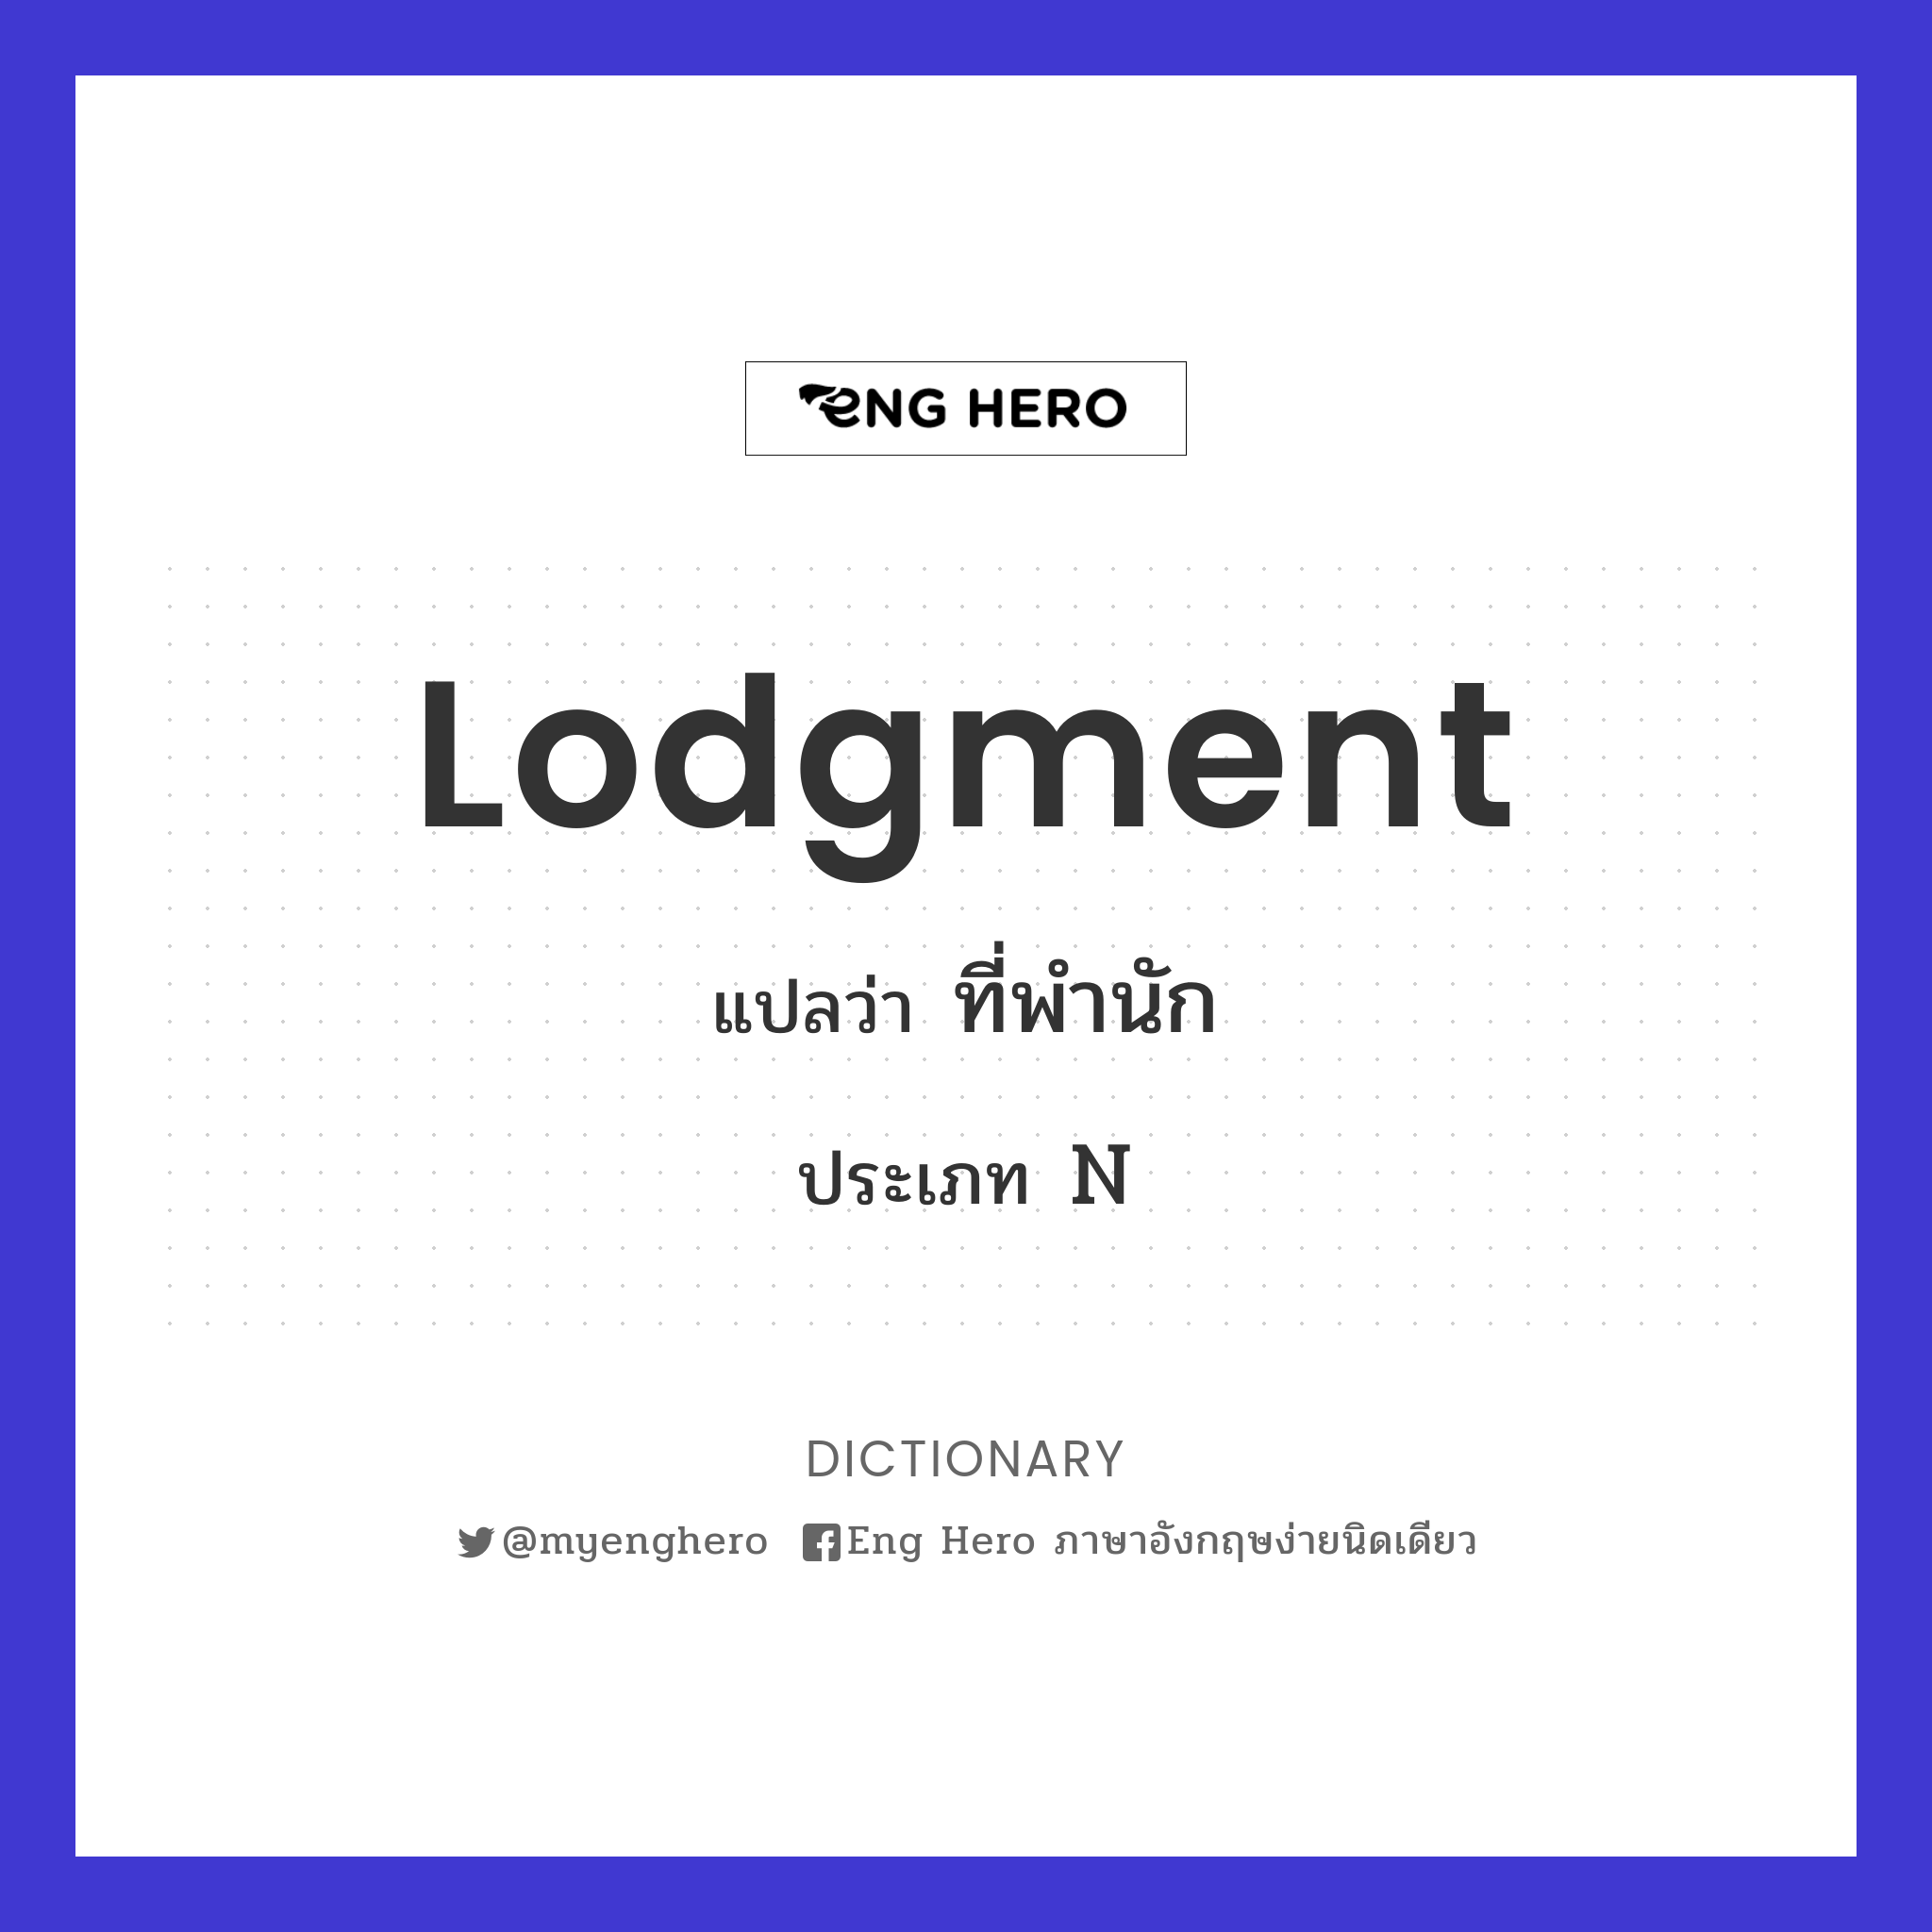 lodgment